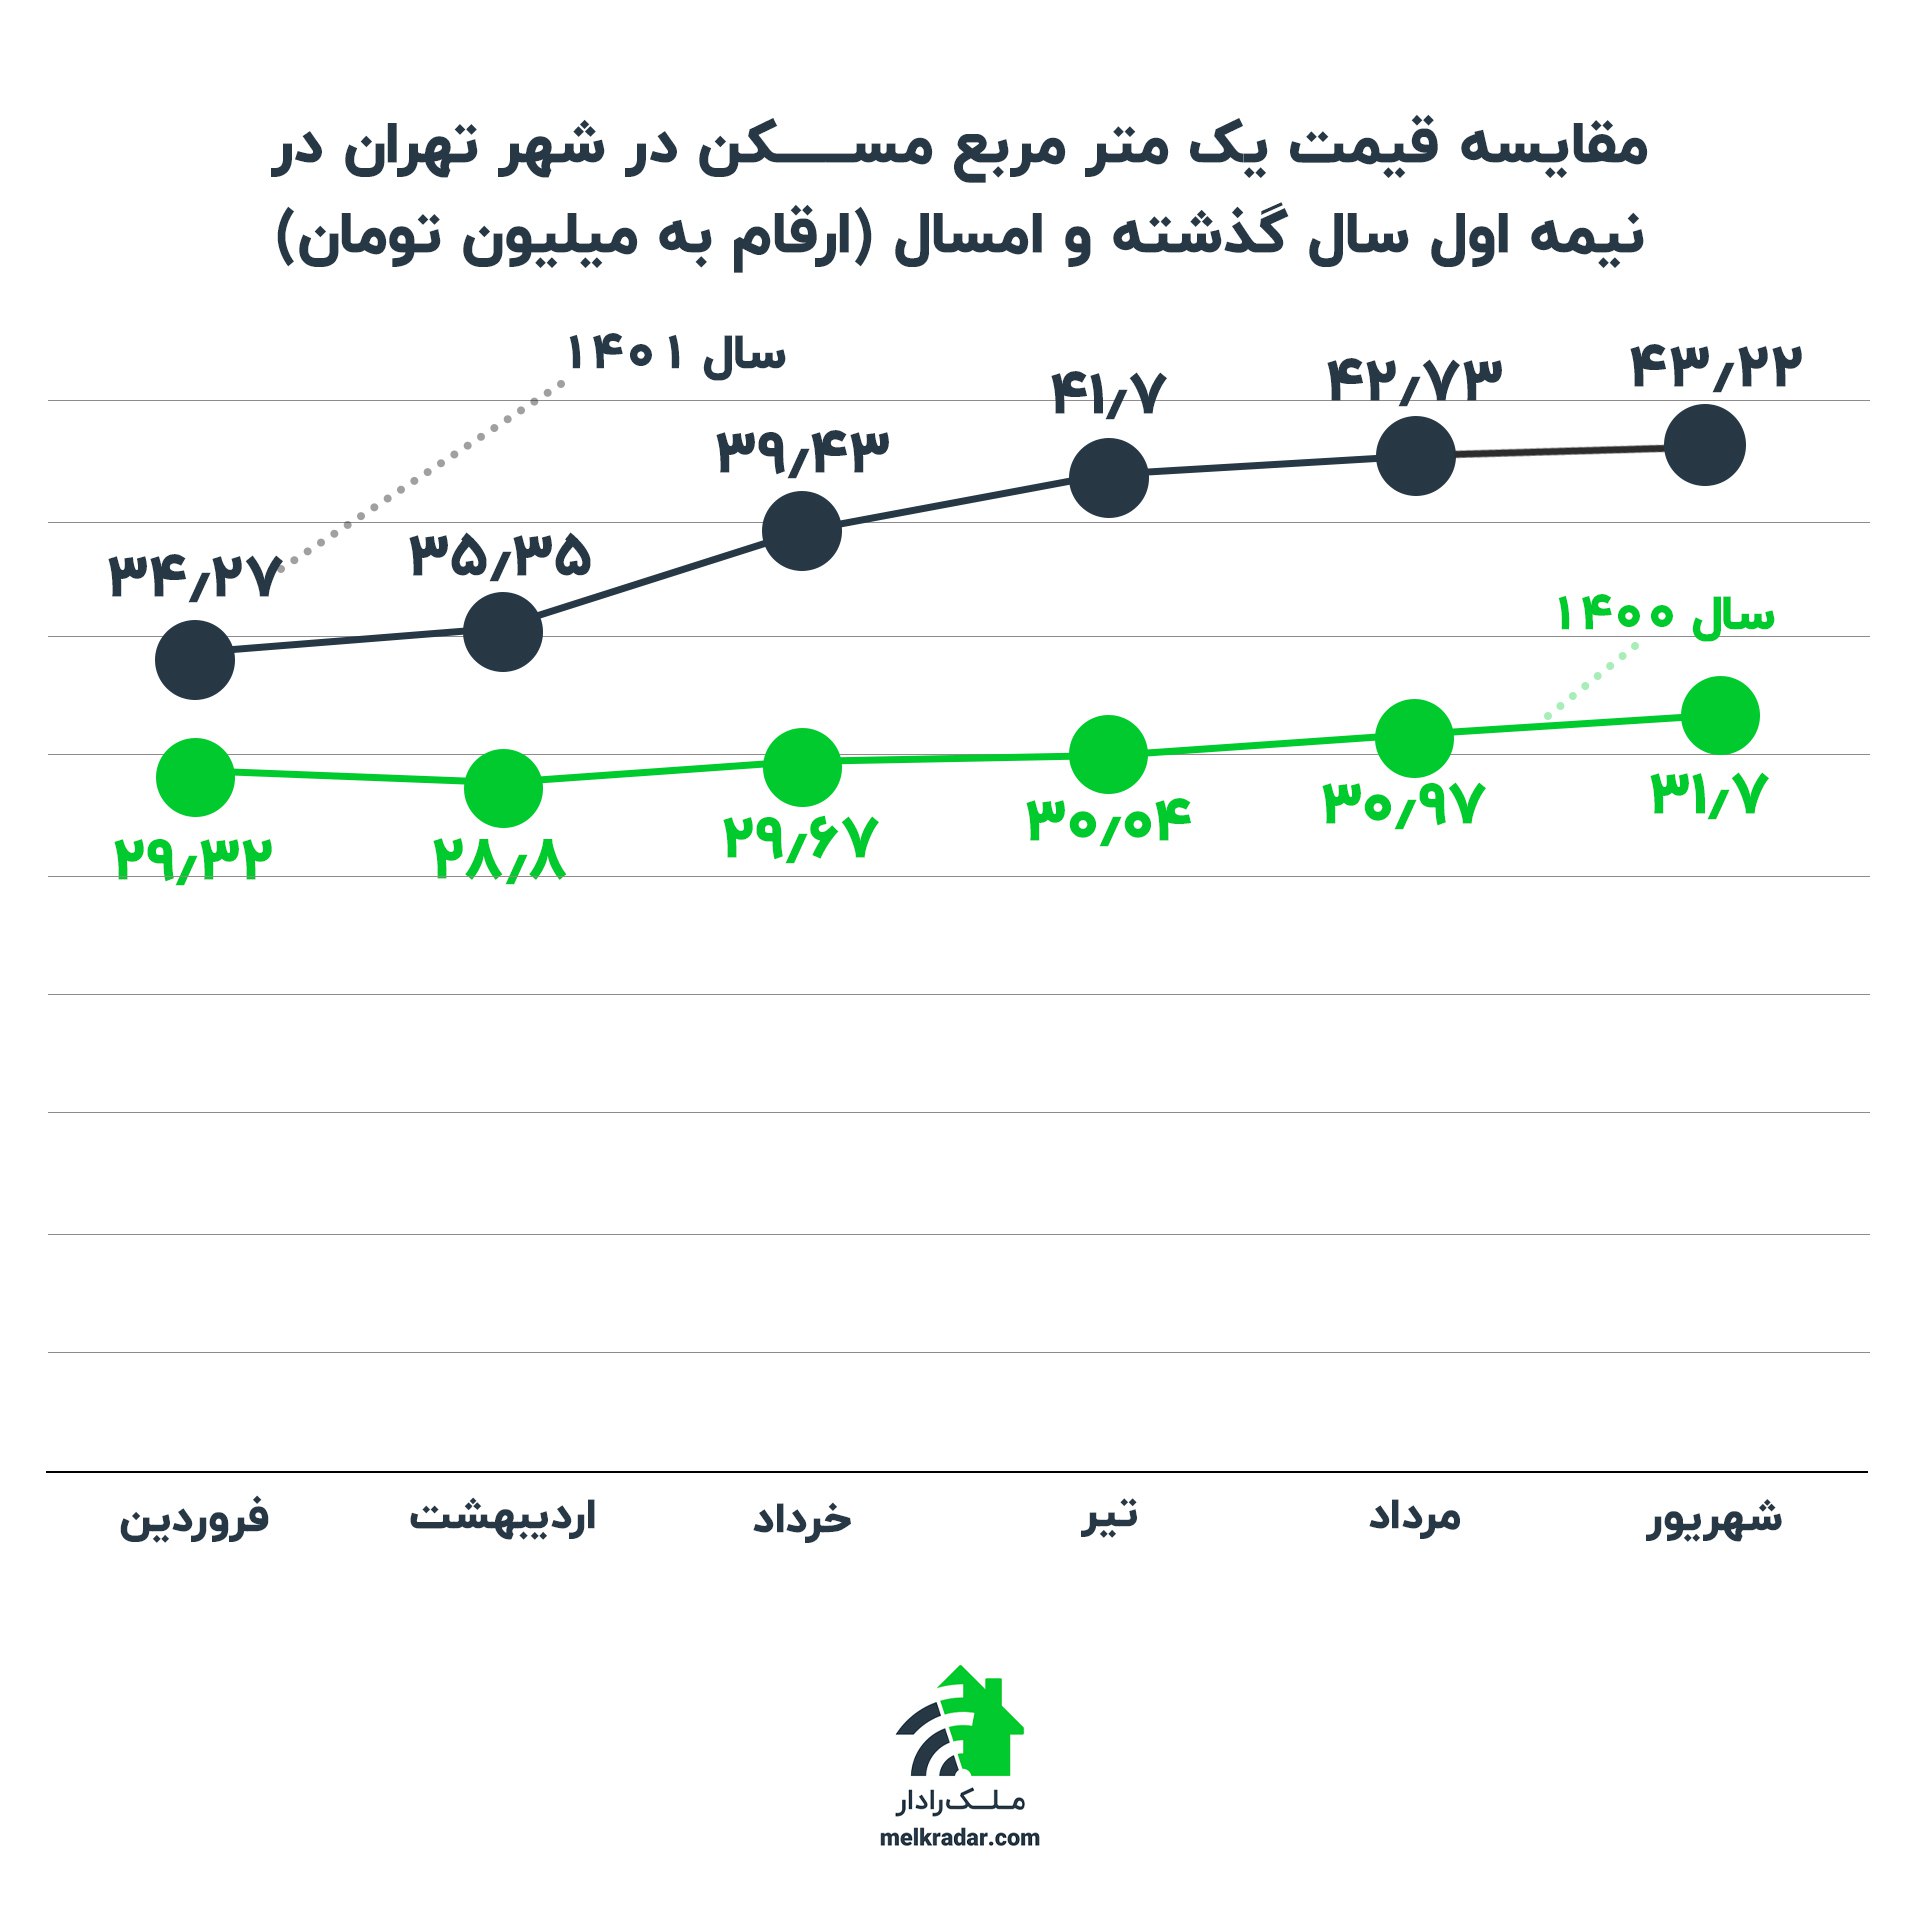 مقایسه قیمت یک متر مربع مسکن در شهر تهران در نیمه اول سال گذشته و امسال (ارقام به میلیون تومان)